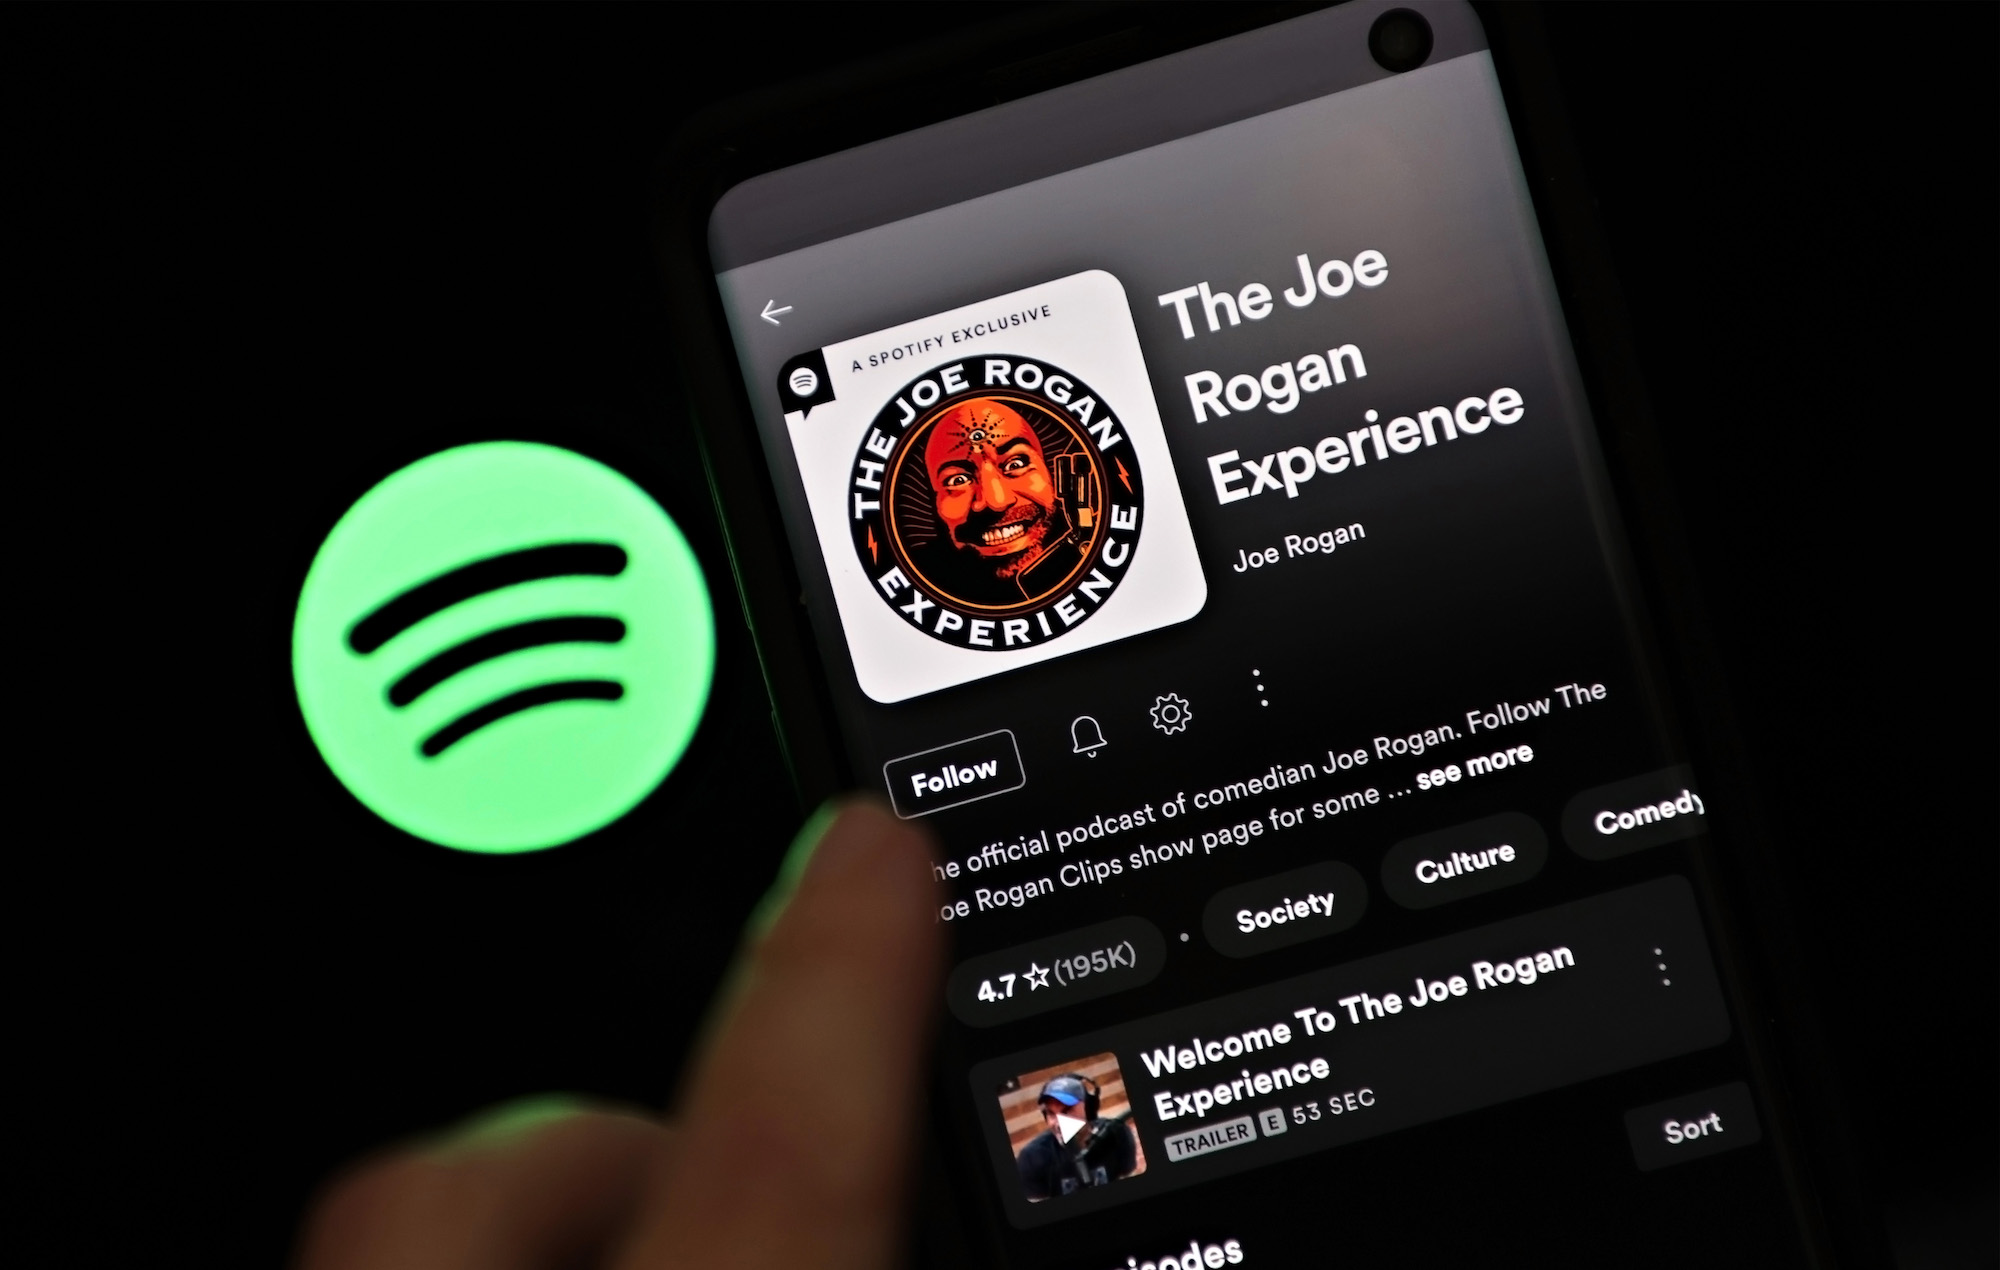 Spotify The Joe Rogan Experience